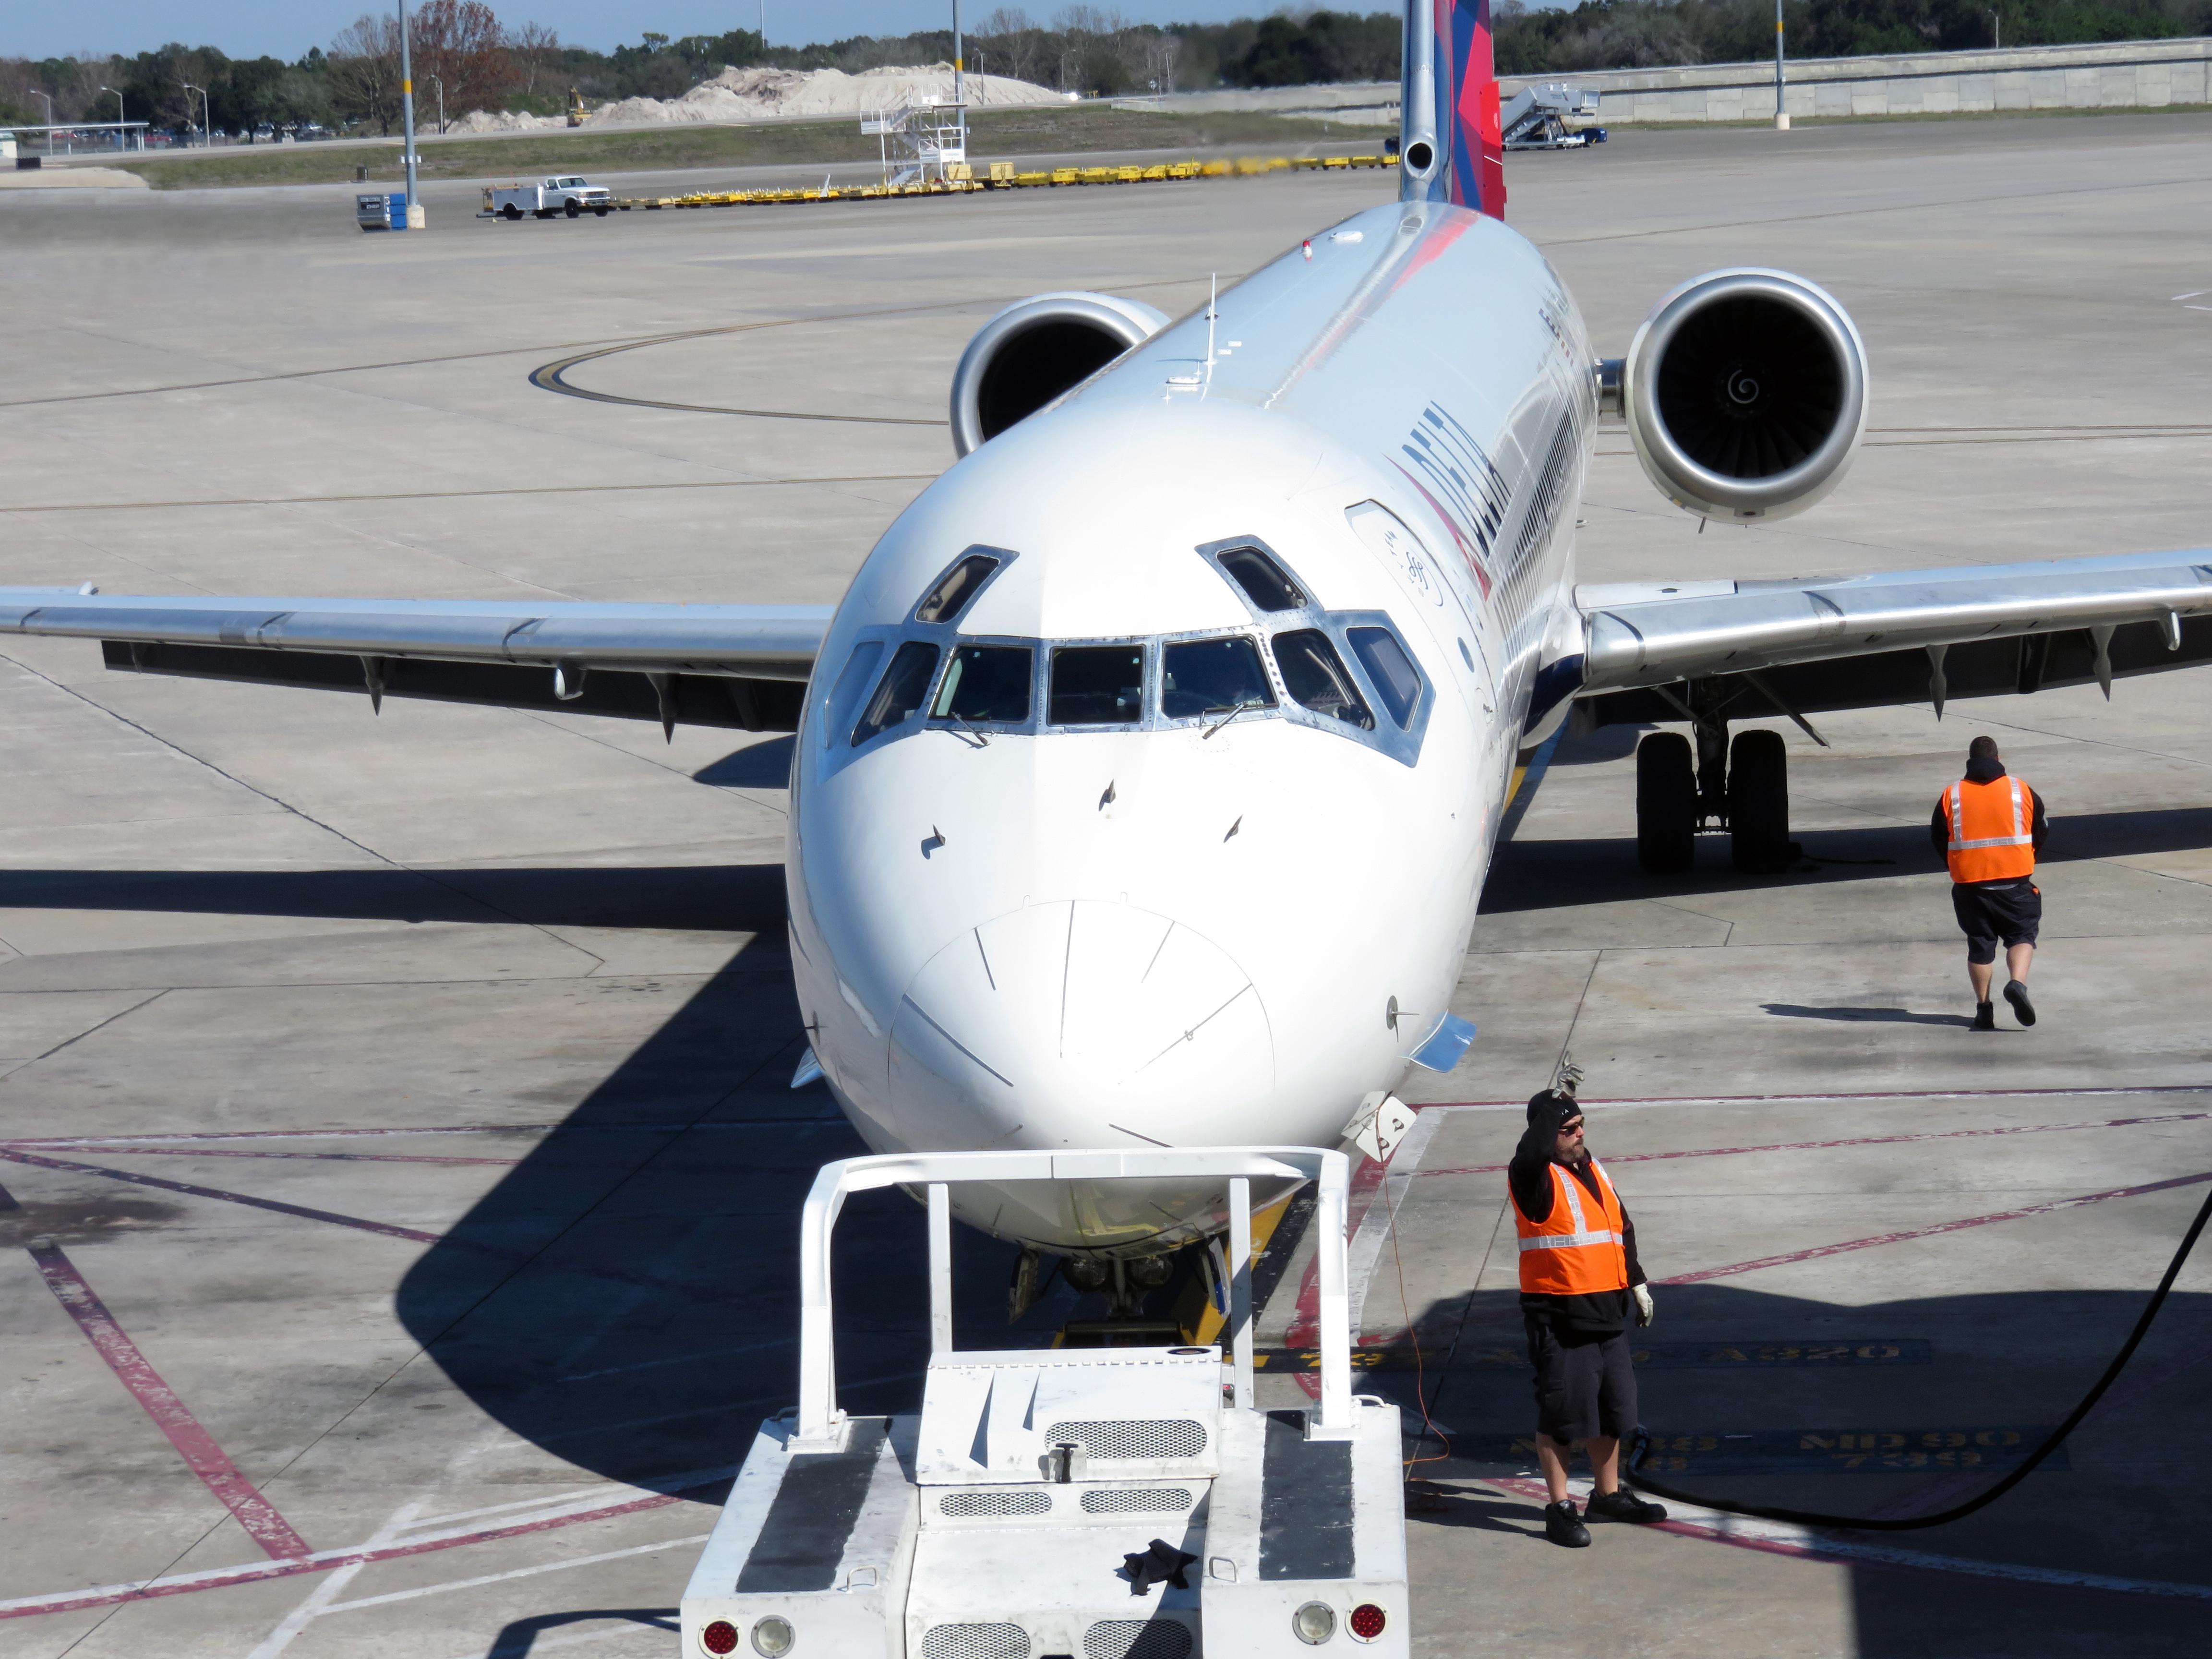 Suspenden permisos a aerolínea LaMia y a autoridades bolivianas aeronáuticas